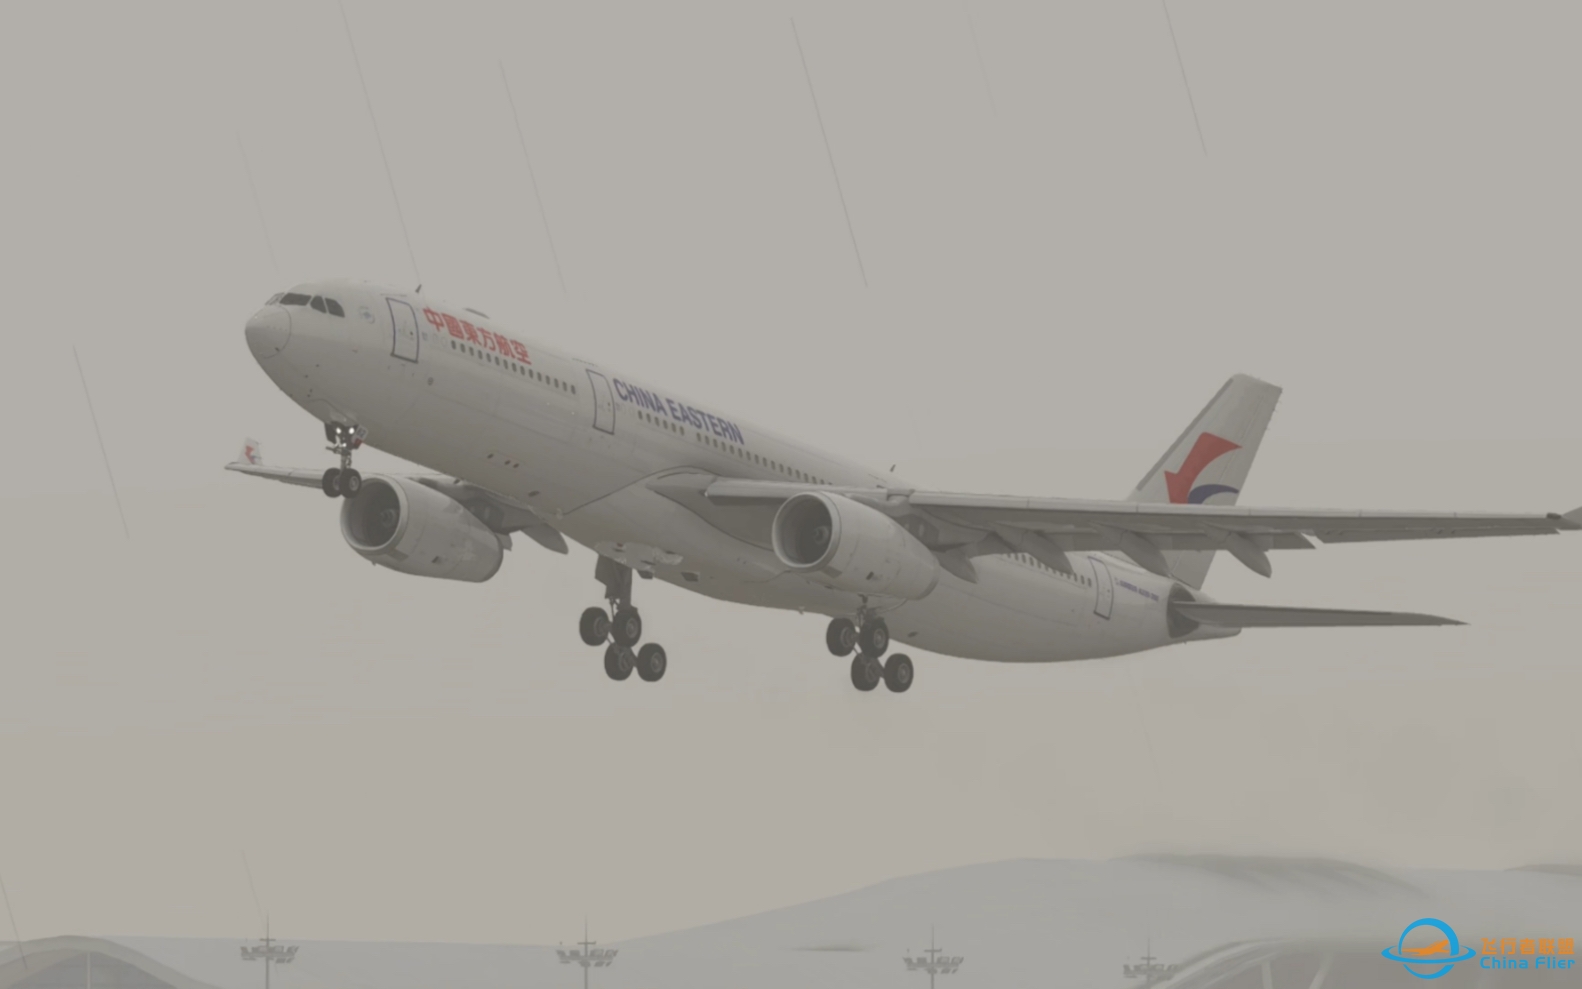 【Xplane12】多个视角观看中国东方航空A330-300雨中从上海浦东国际机场起飞全过程.-4553 